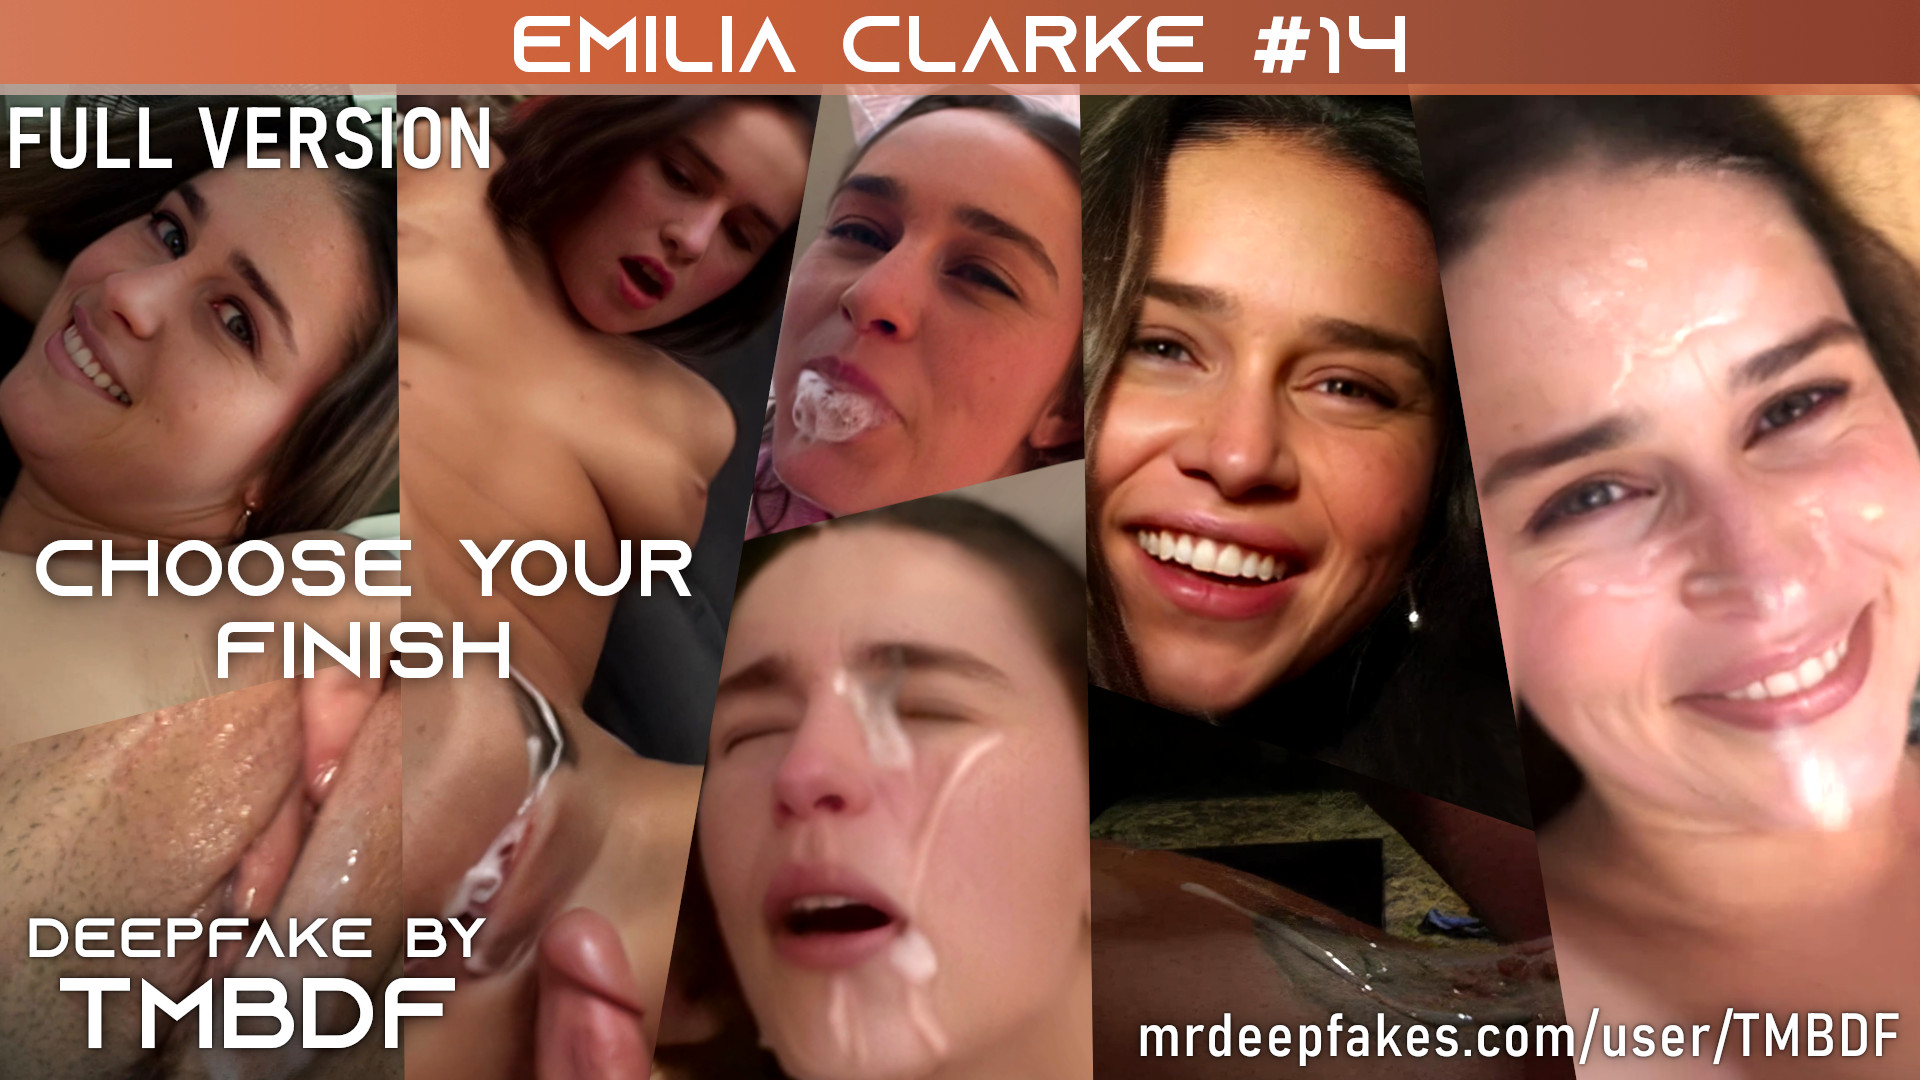 Emilia Clarke #14 - FULL VERSION - Preview link in video description